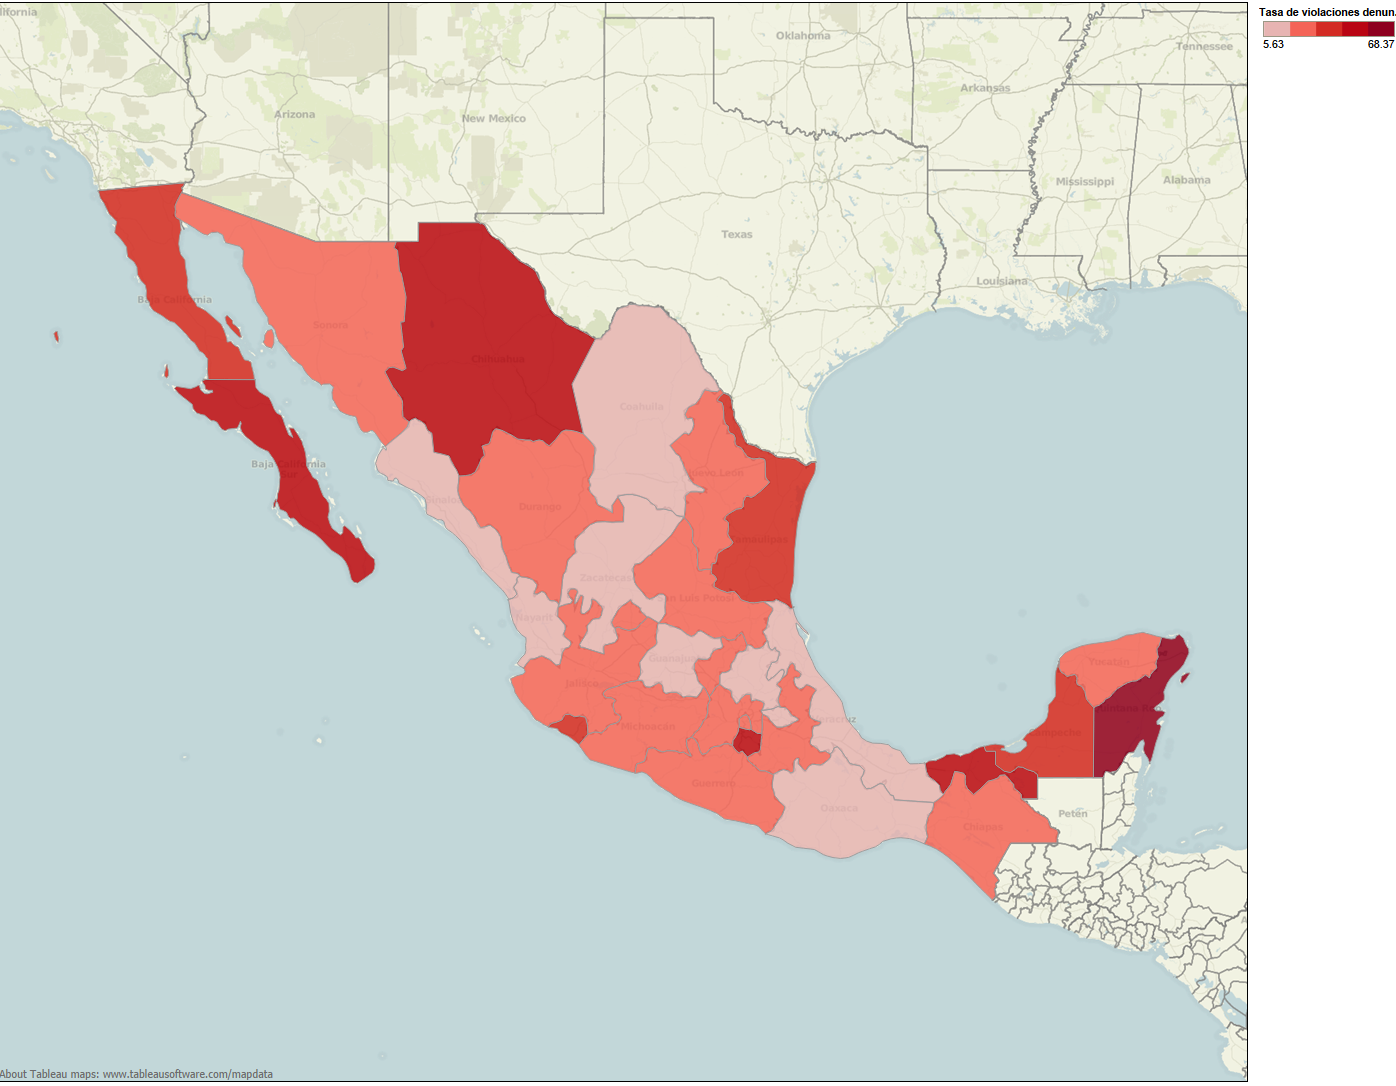 Haga click en la imagen para ver mapa interactivo con tasa de violaciones denunciadas por cada cien mil mujeres por estado en México.